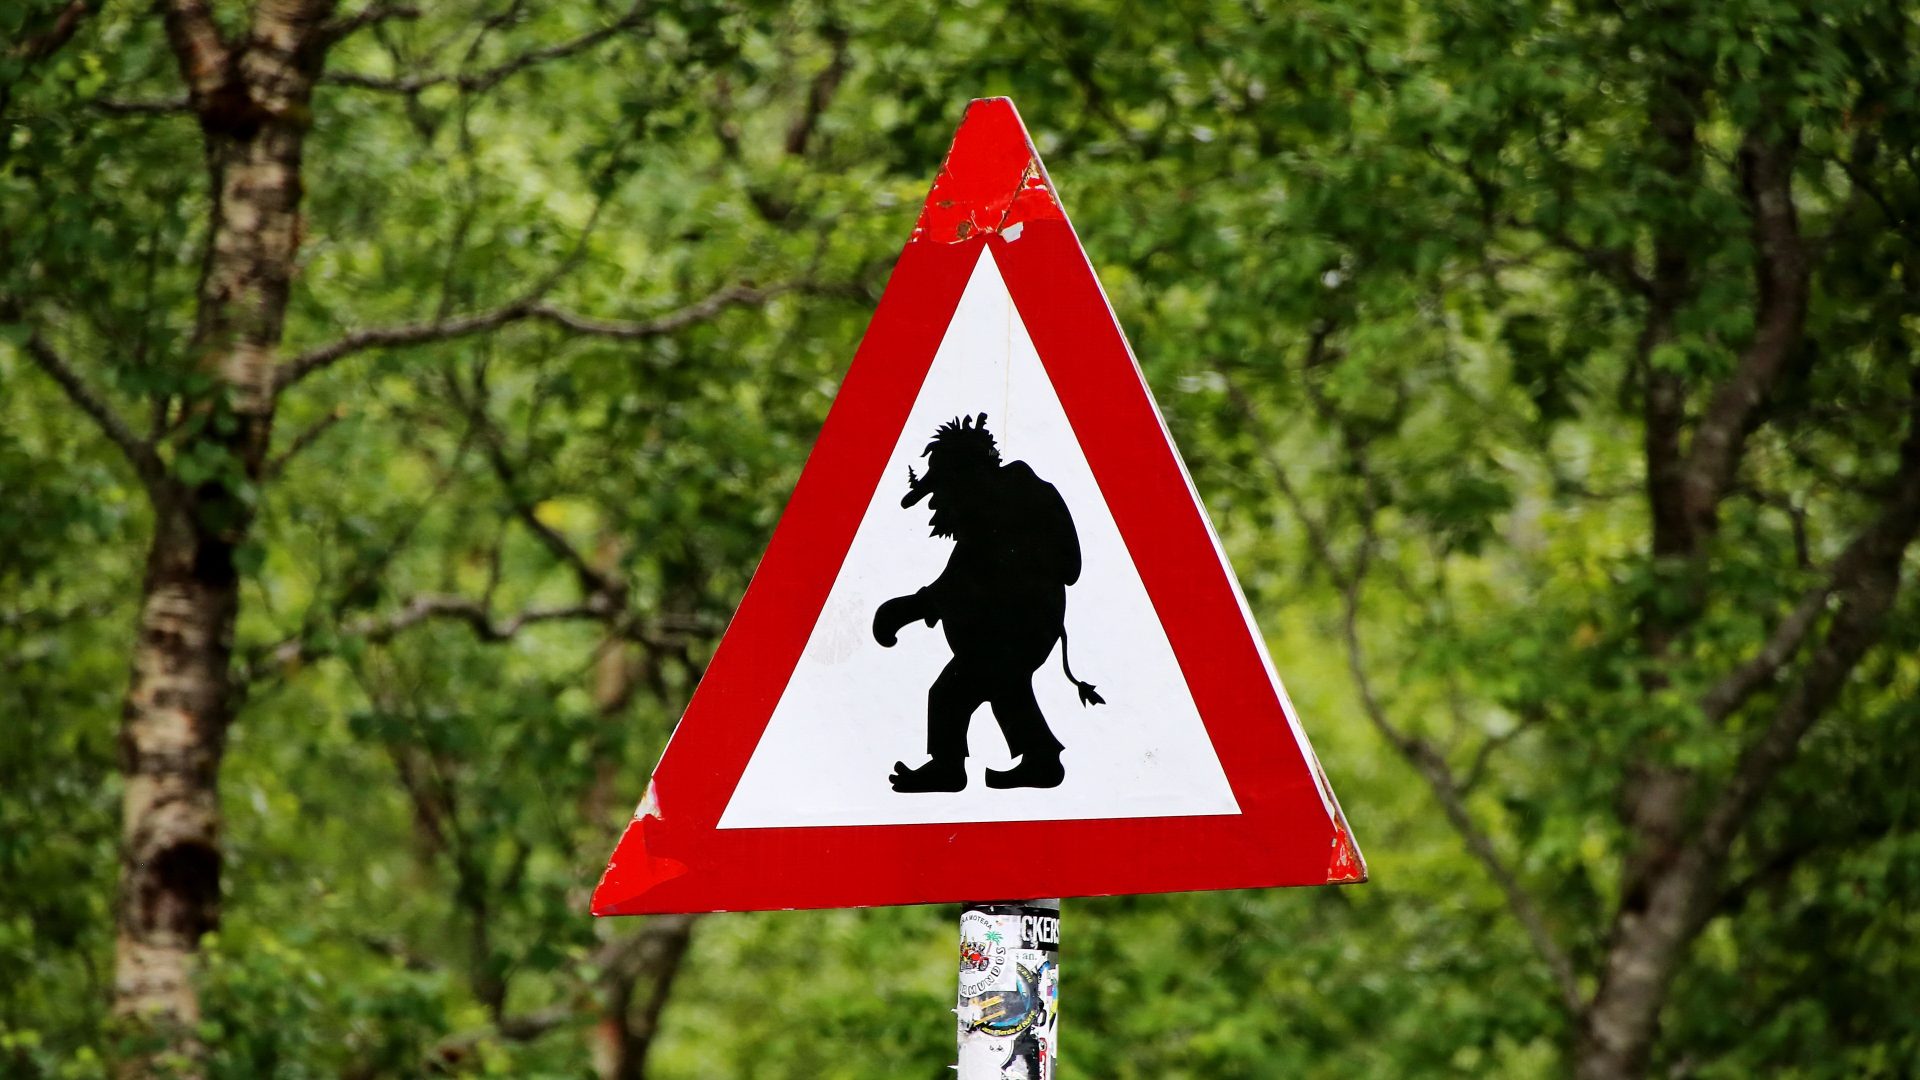 Placa mostra a silhueta de um troll, representando o troll da Internet; ao fundo há folhas de árvores